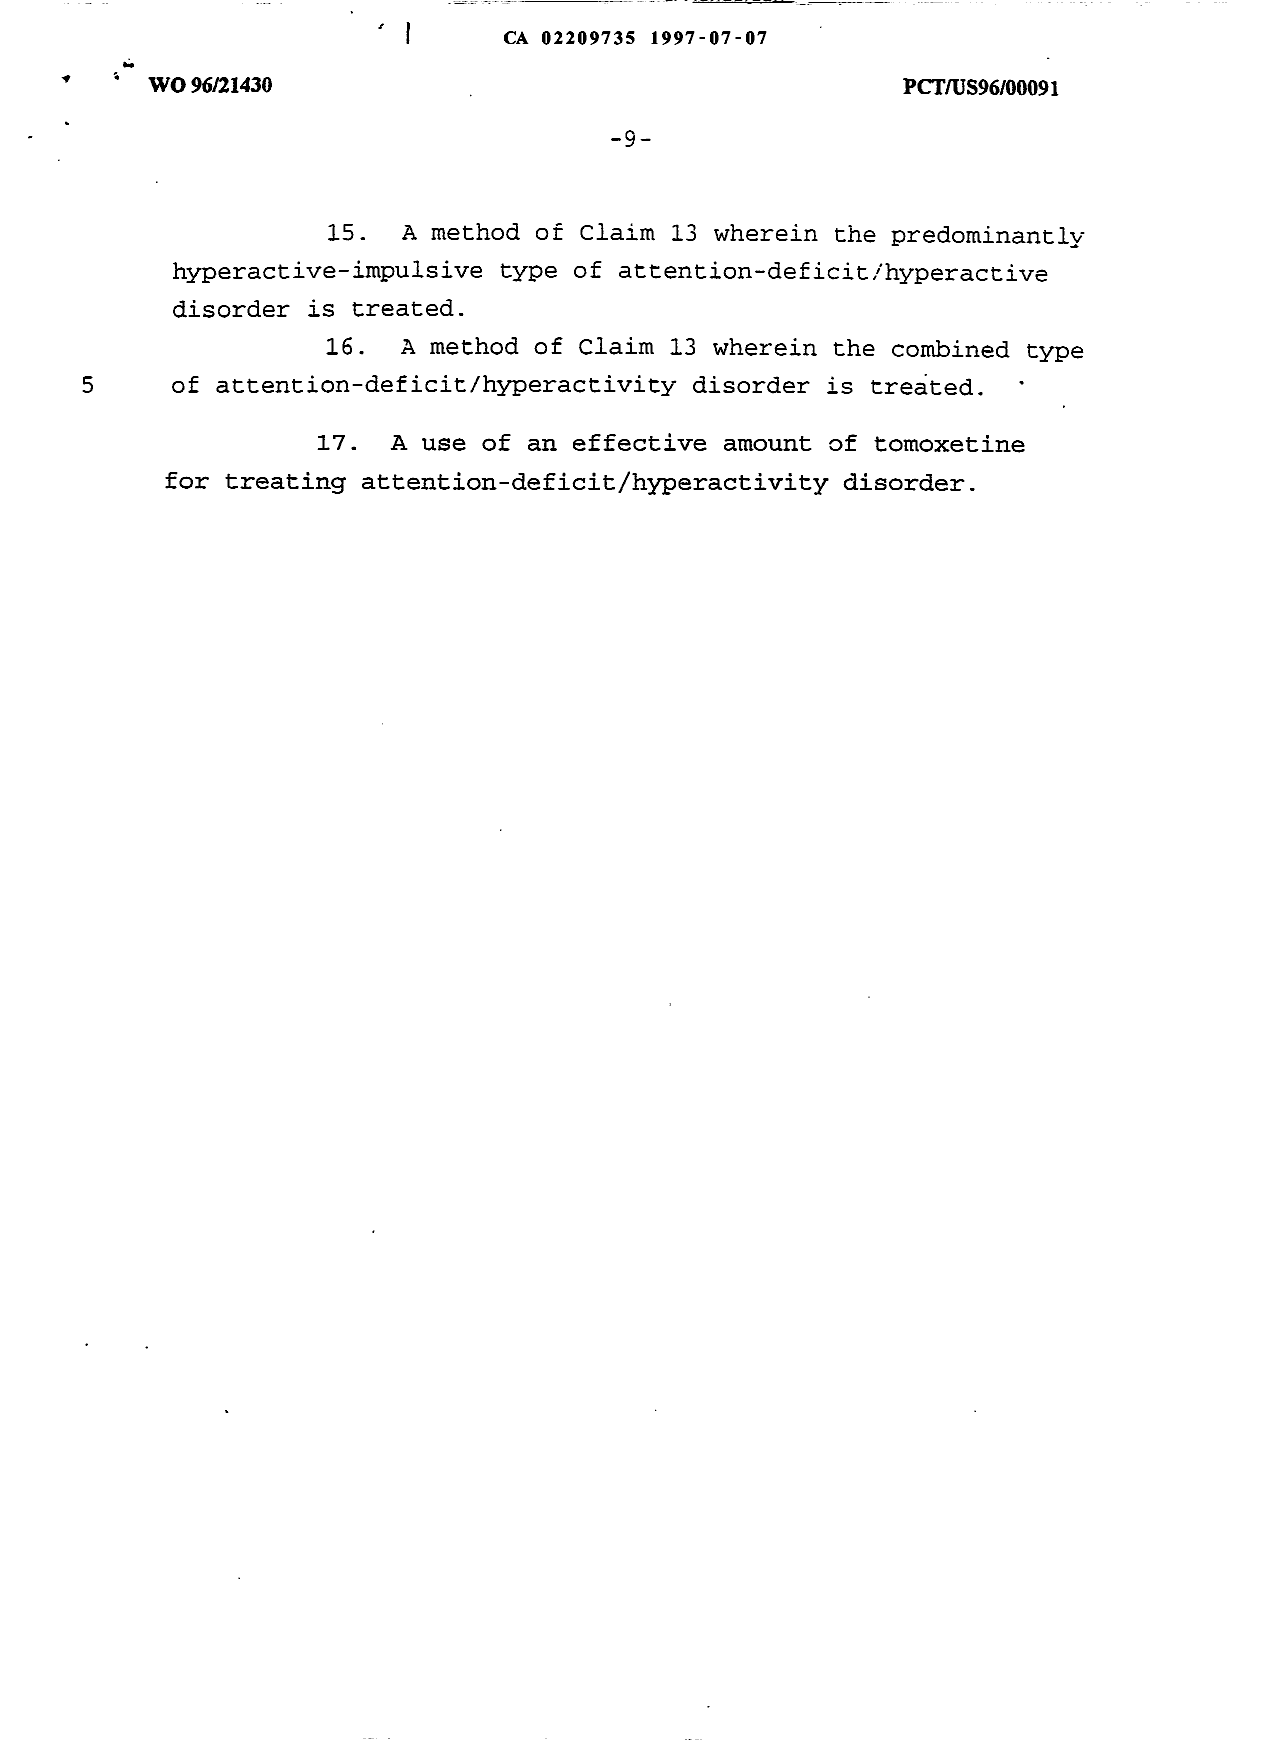 Document de brevet canadien 2209735. Revendications 19961208. Image 2 de 2